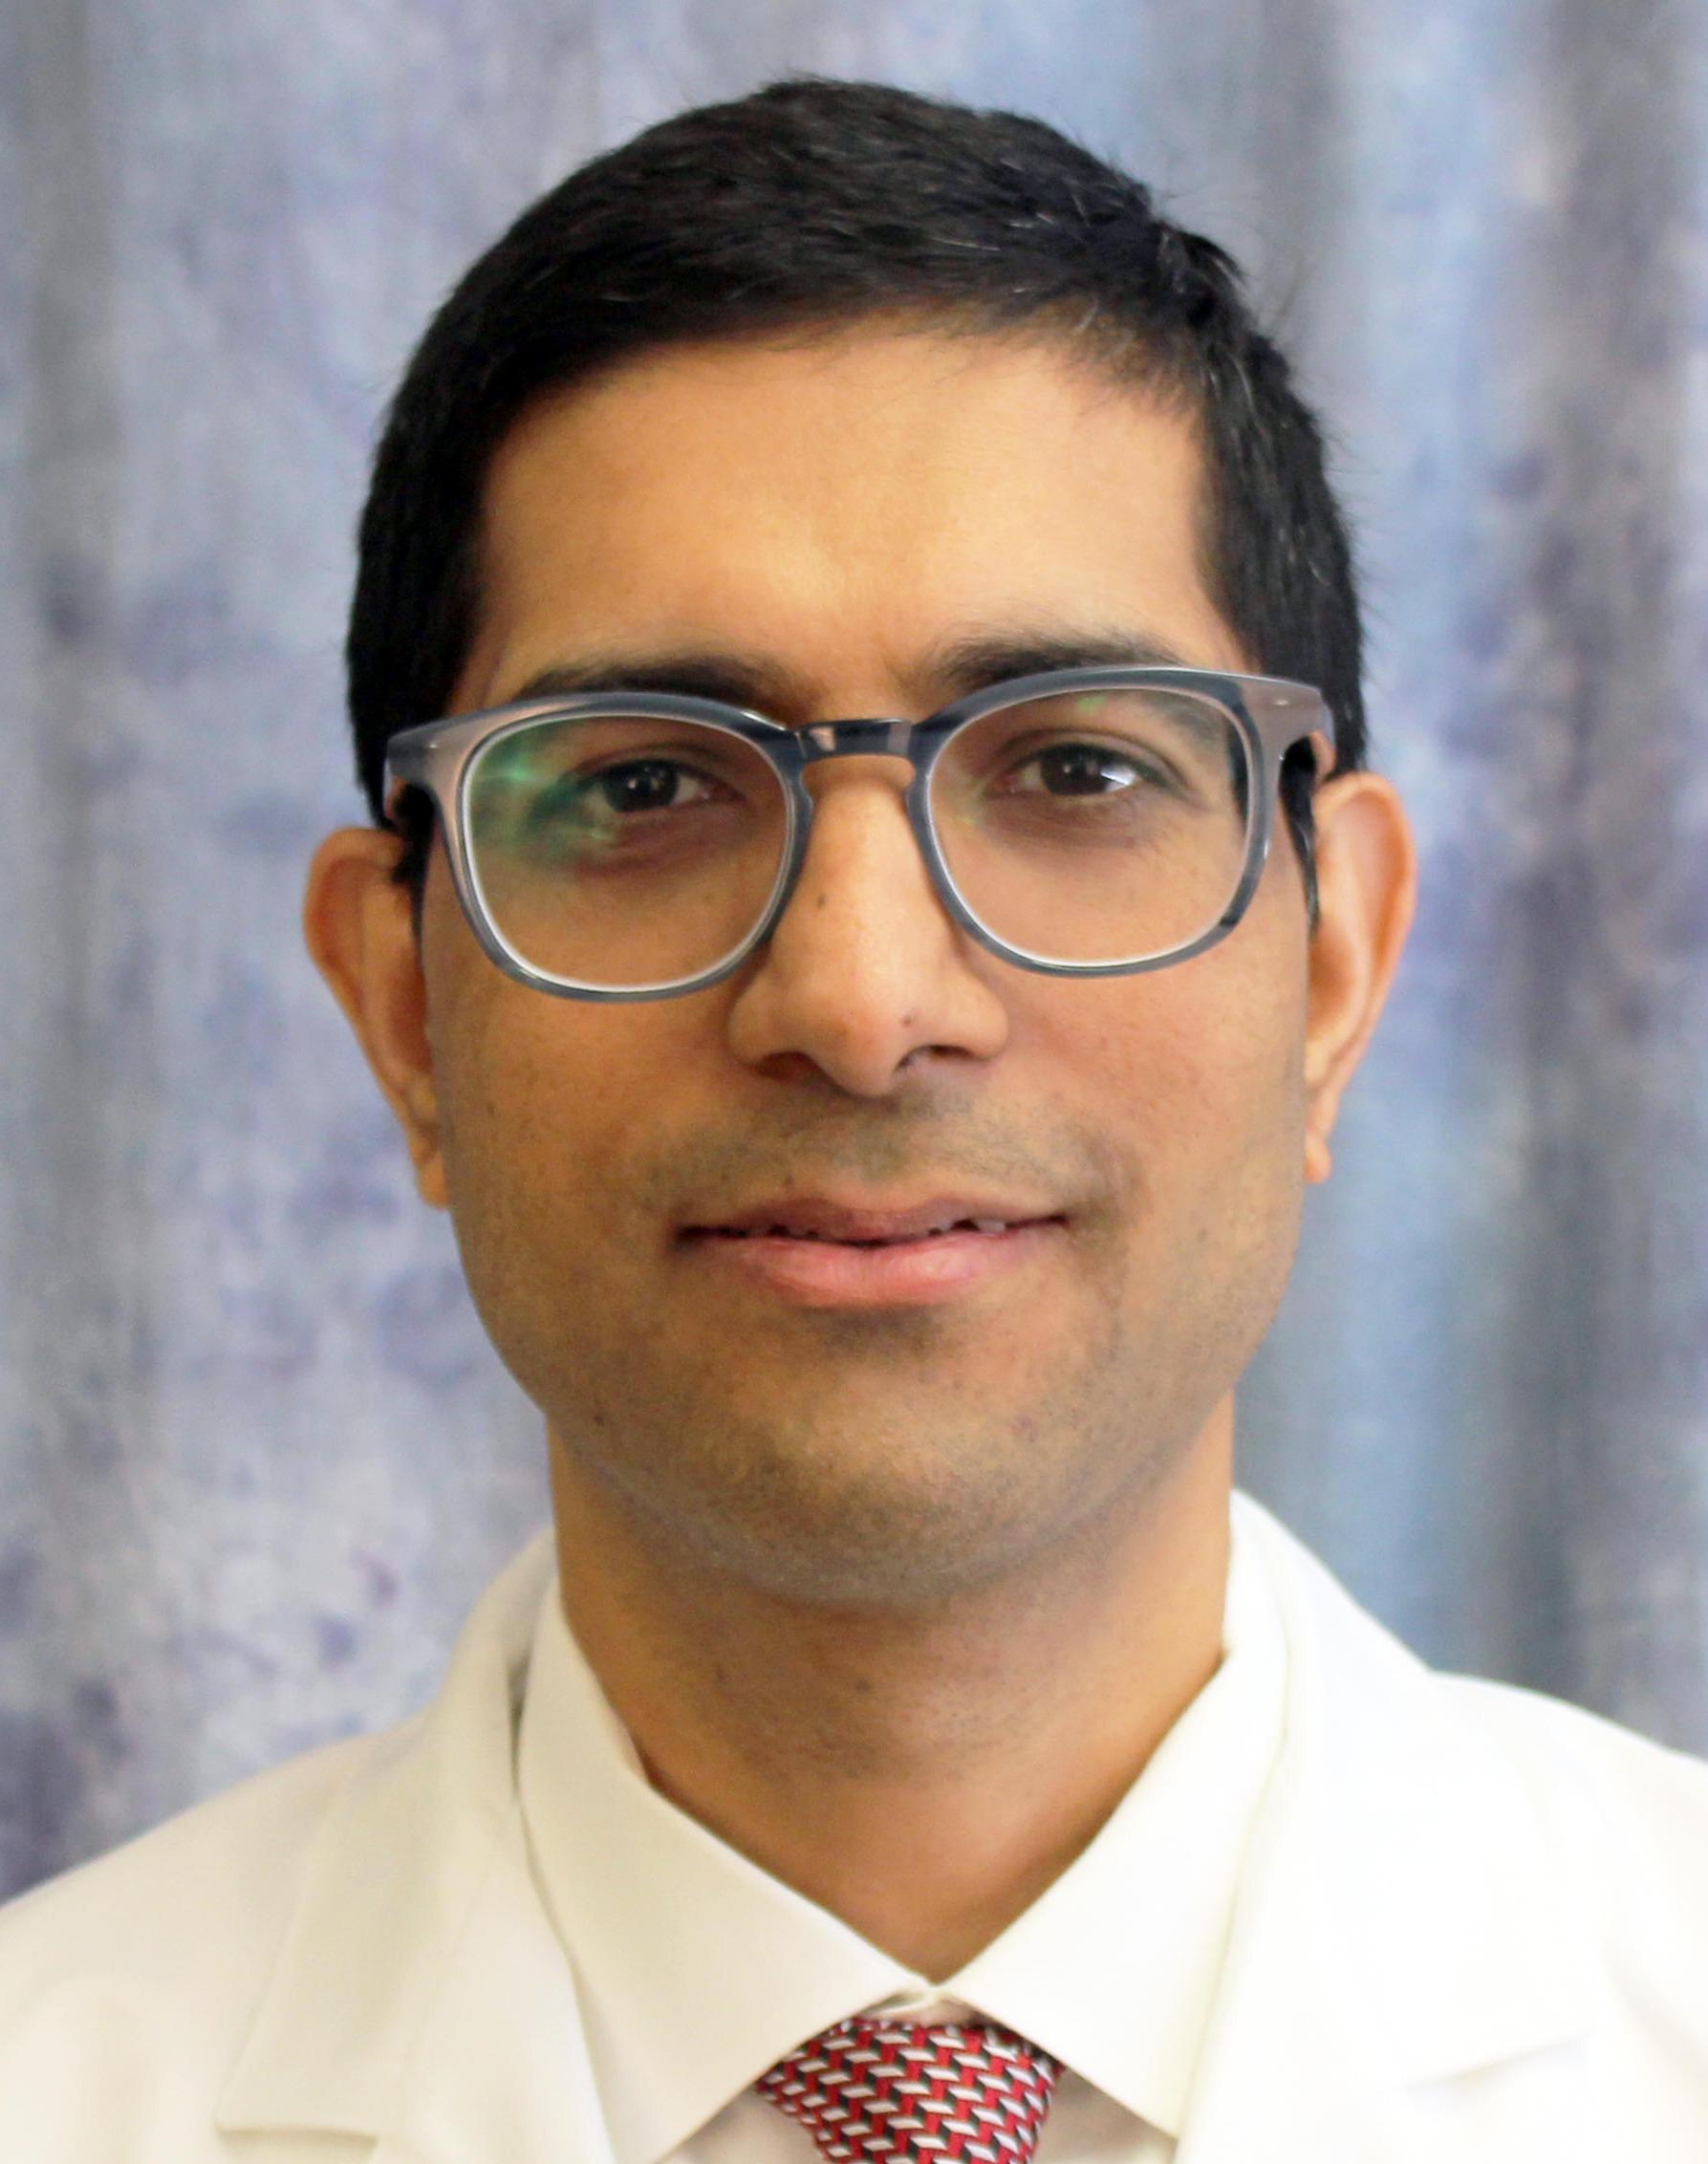 Dr. Rakesh Kumar - Lumberton, NC - General Surgeon, Bariatric Surgeon